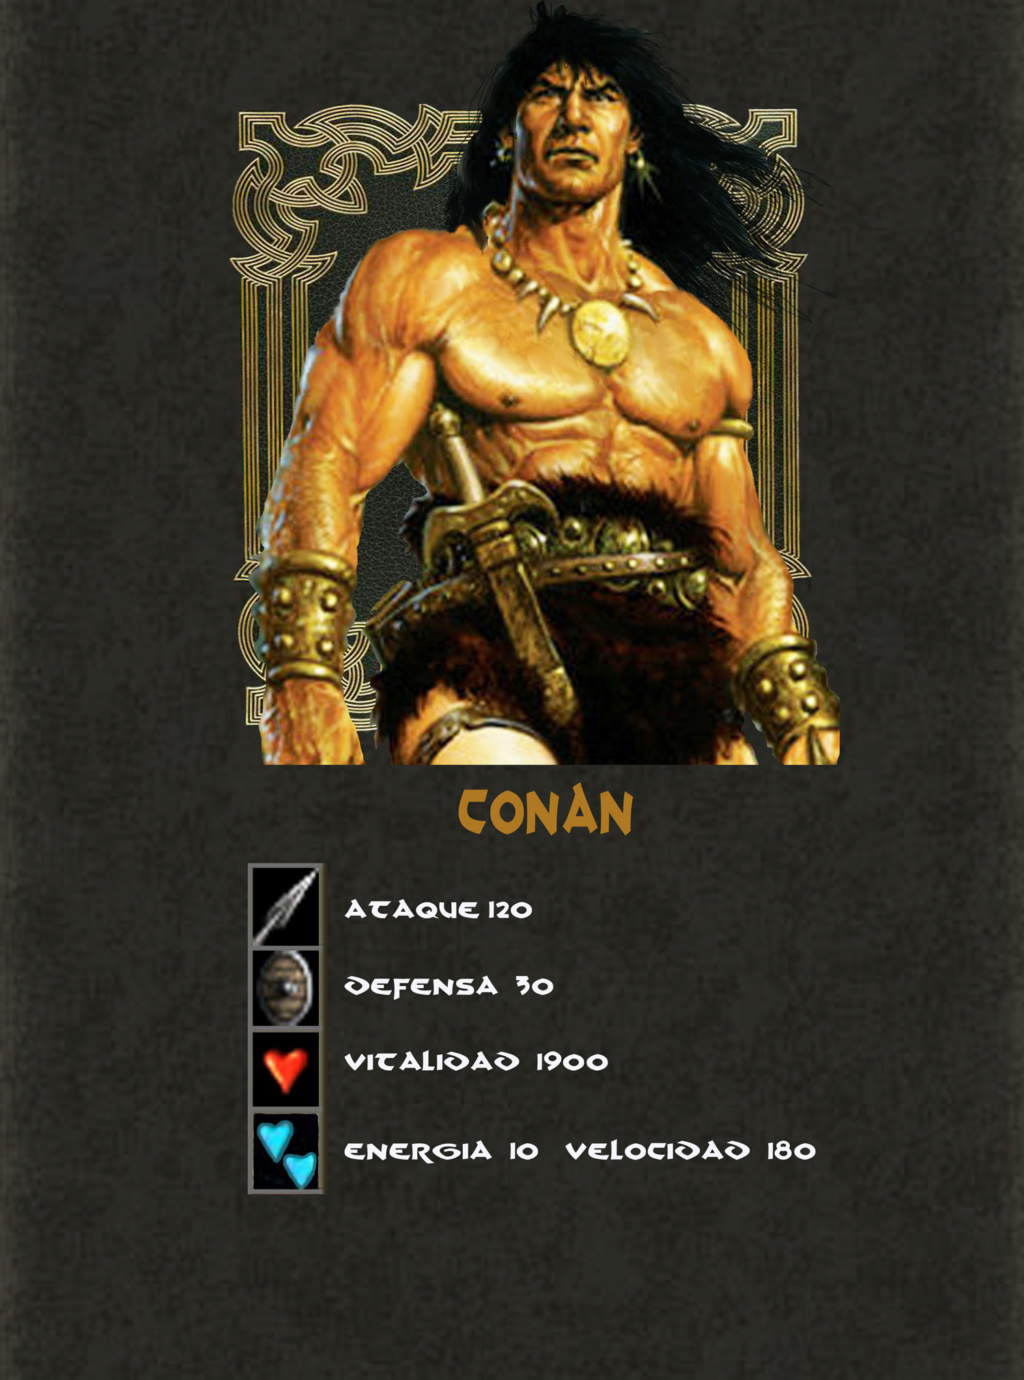 Conan, Crònicas Cimmerias - Página 4 Conan_10